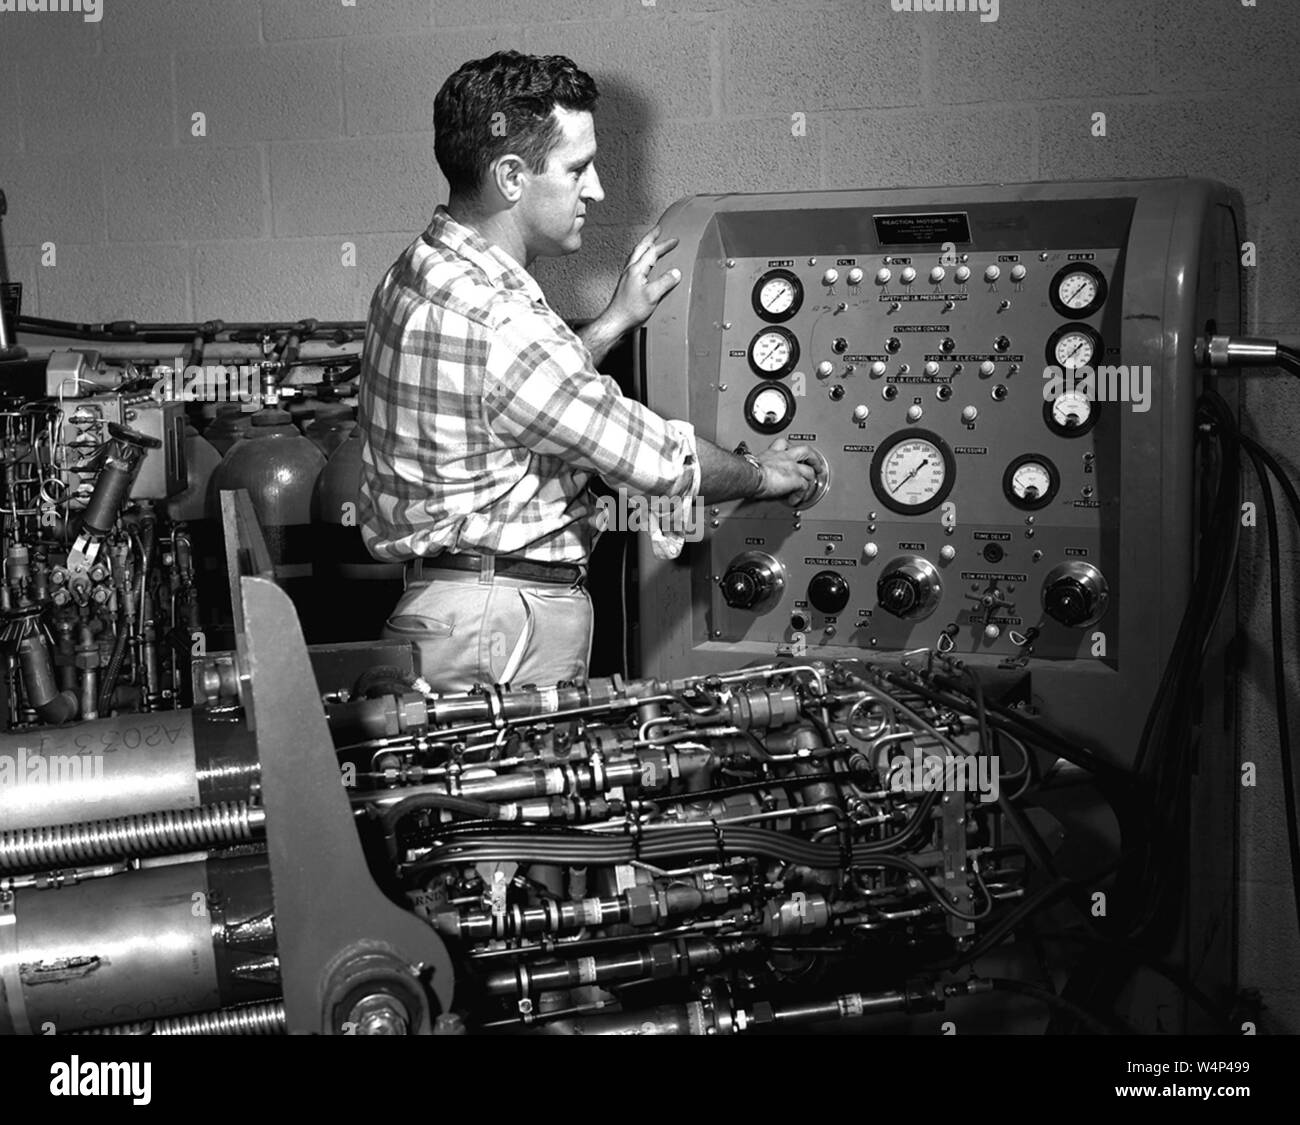 Jack Russell ingénieur de la NASA se prépare à faire des tests de pressurisation sur le moteur-fusée XLR-11 à NACA High-Speed Flight Station Rocket Shop, Armstrong Flight Research Center, Edwards Air Force Base, Californie, 1956. Droit avec la permission de la National Aeronautics and Space Administration (NASA). () Banque D'Images